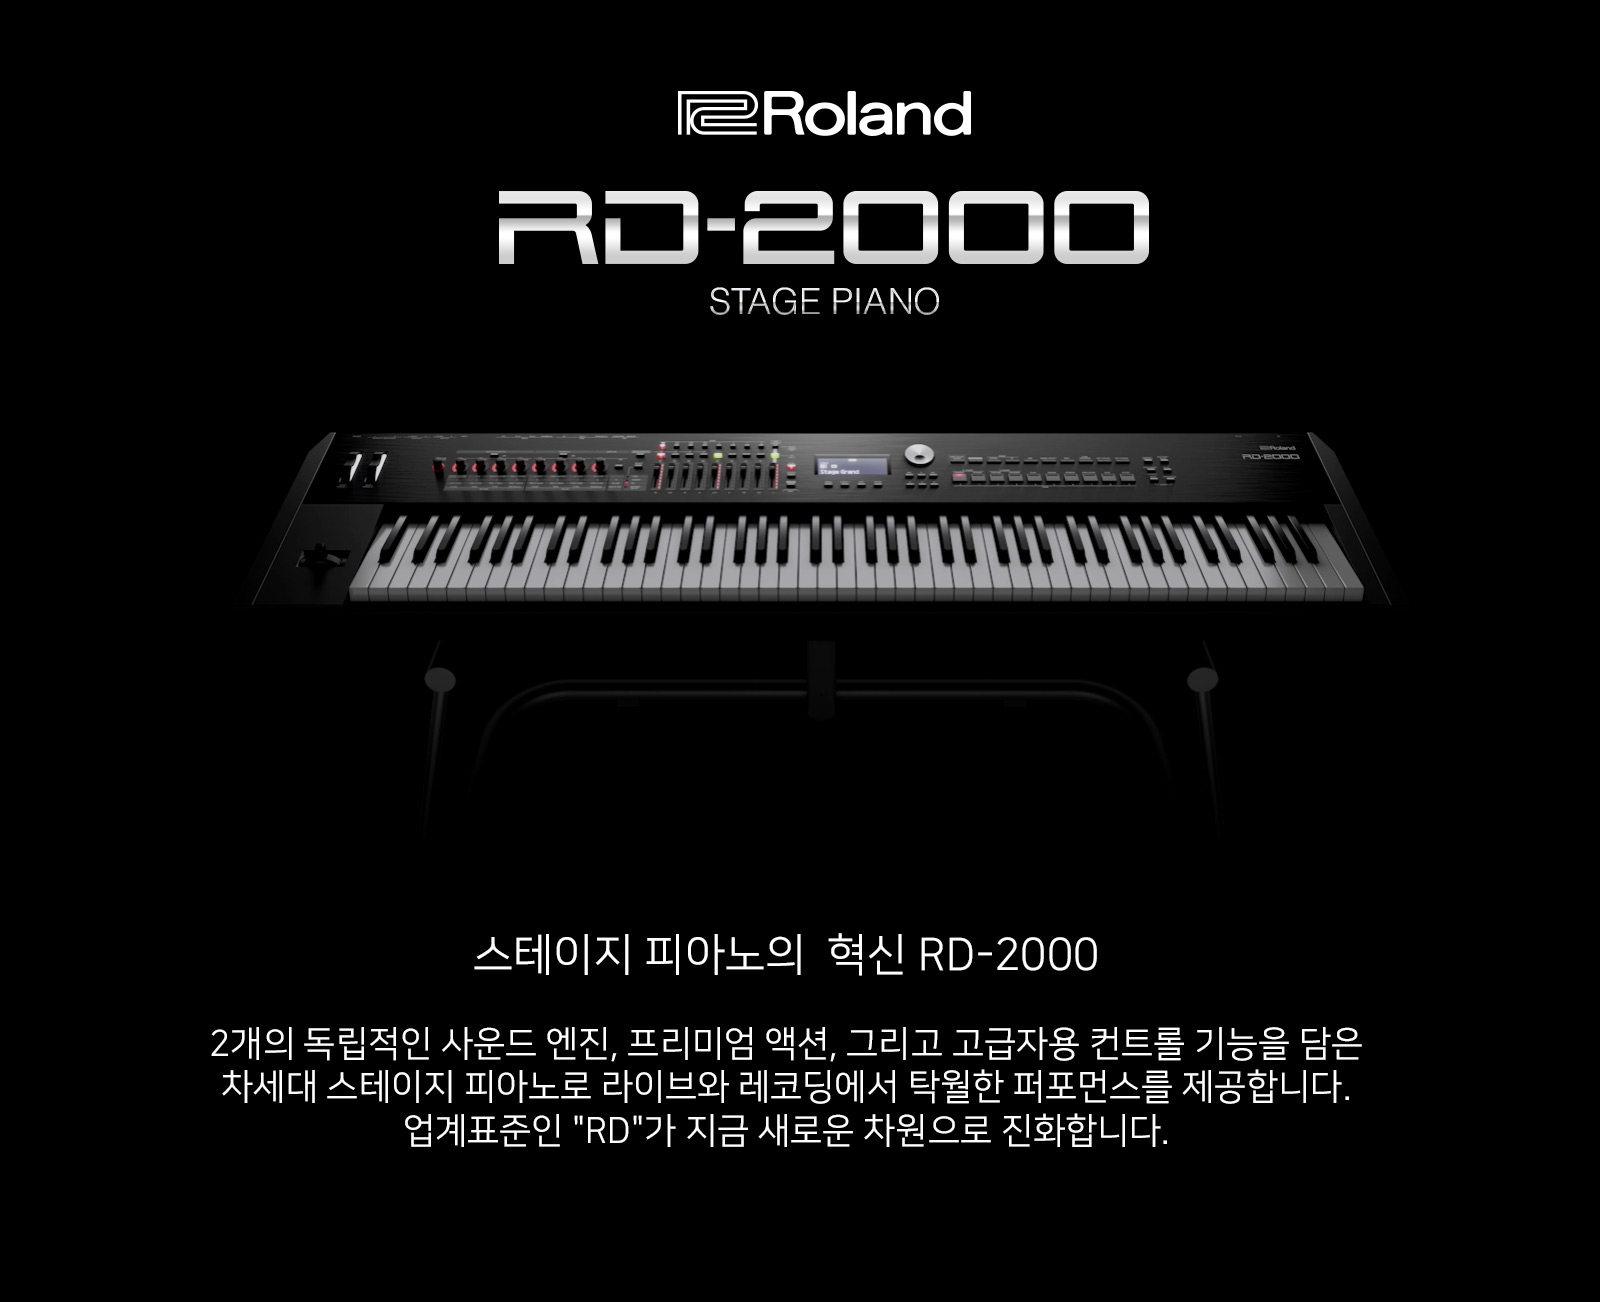 RD-2000 Stage Piano 스테이지 피아노의  혁신 RD-2000, 2개의 독립적인 사운드 엔진, 프리미엄 액션, 그리고 고급자용 컨트롤 기능을 담은 차세대 스테이지 피아노로 라이브와 레코딩에서 탁월한 퍼포먼스를 제공합니다. 업계표준인 RD 시리즈가 지금 새로운 차원으로 진화합니다.